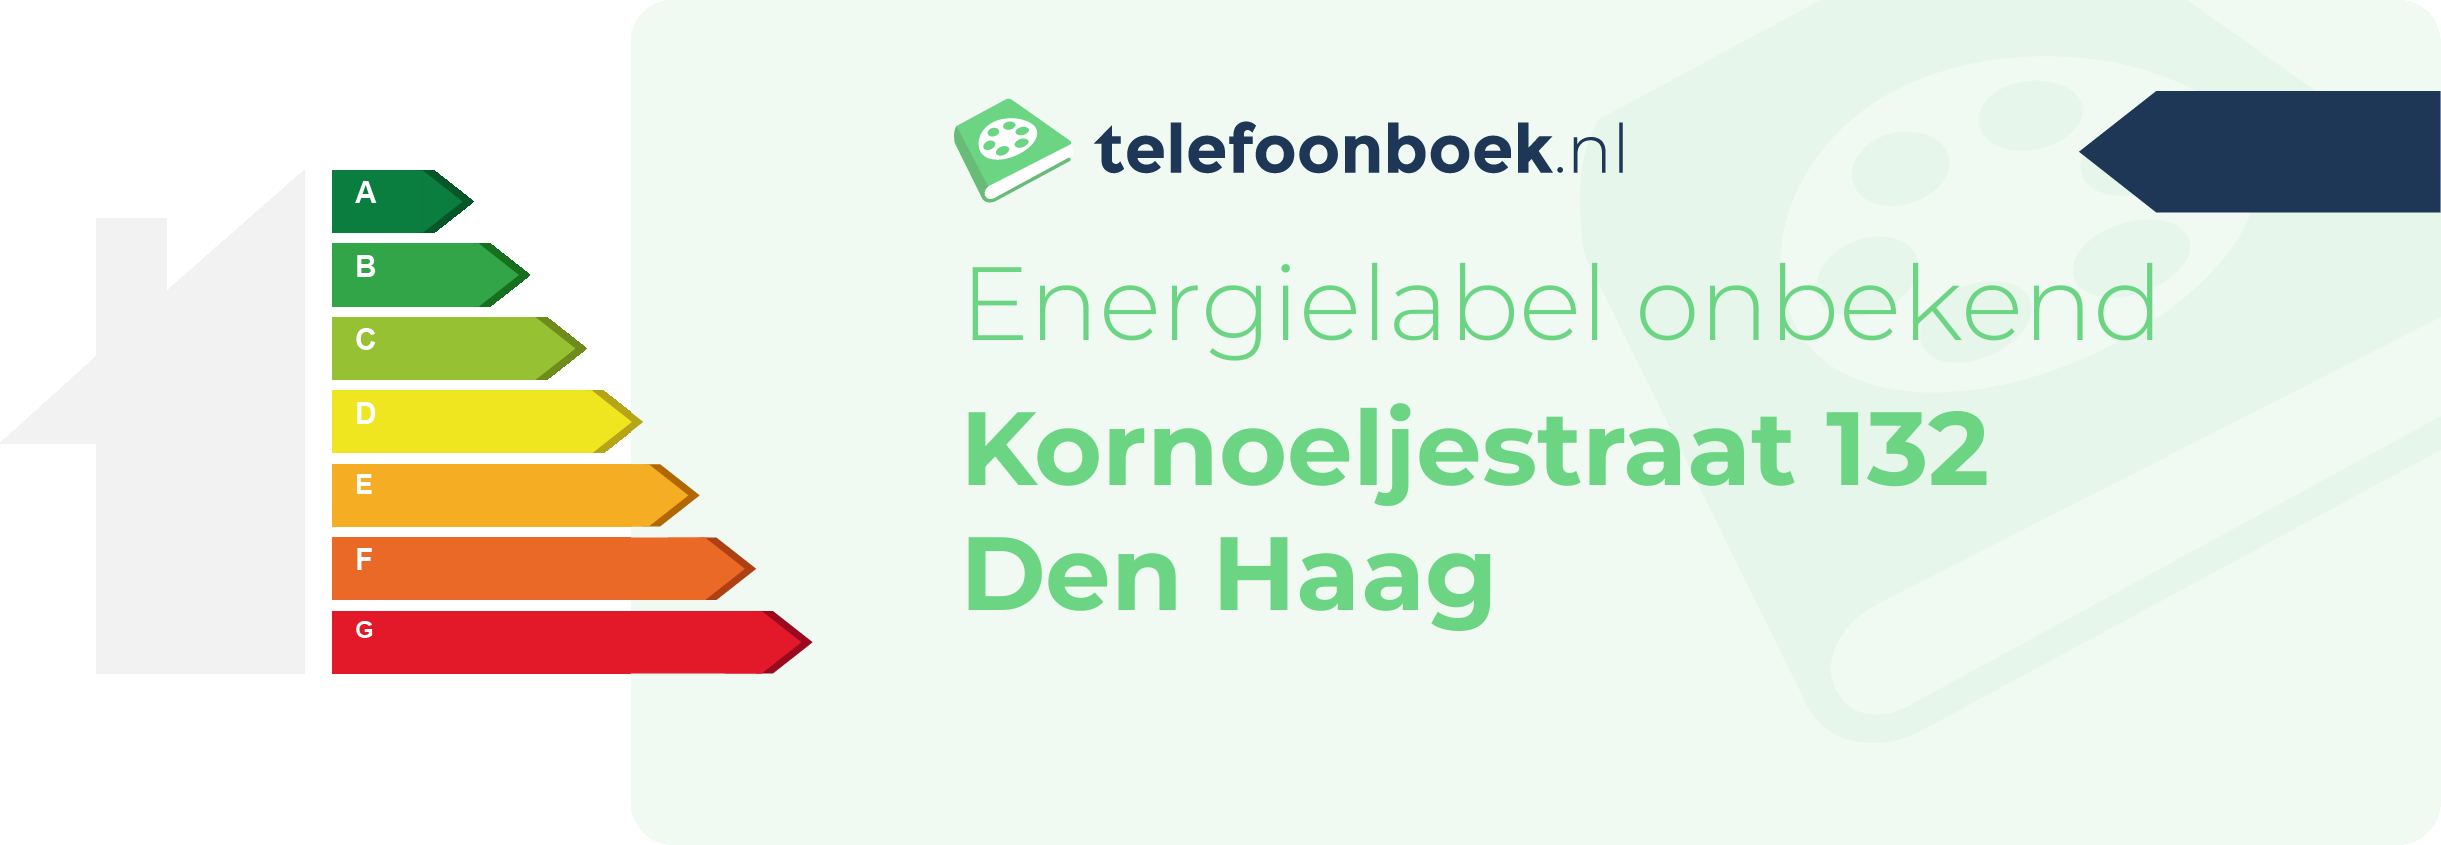 Energielabel Kornoeljestraat 132 Den Haag